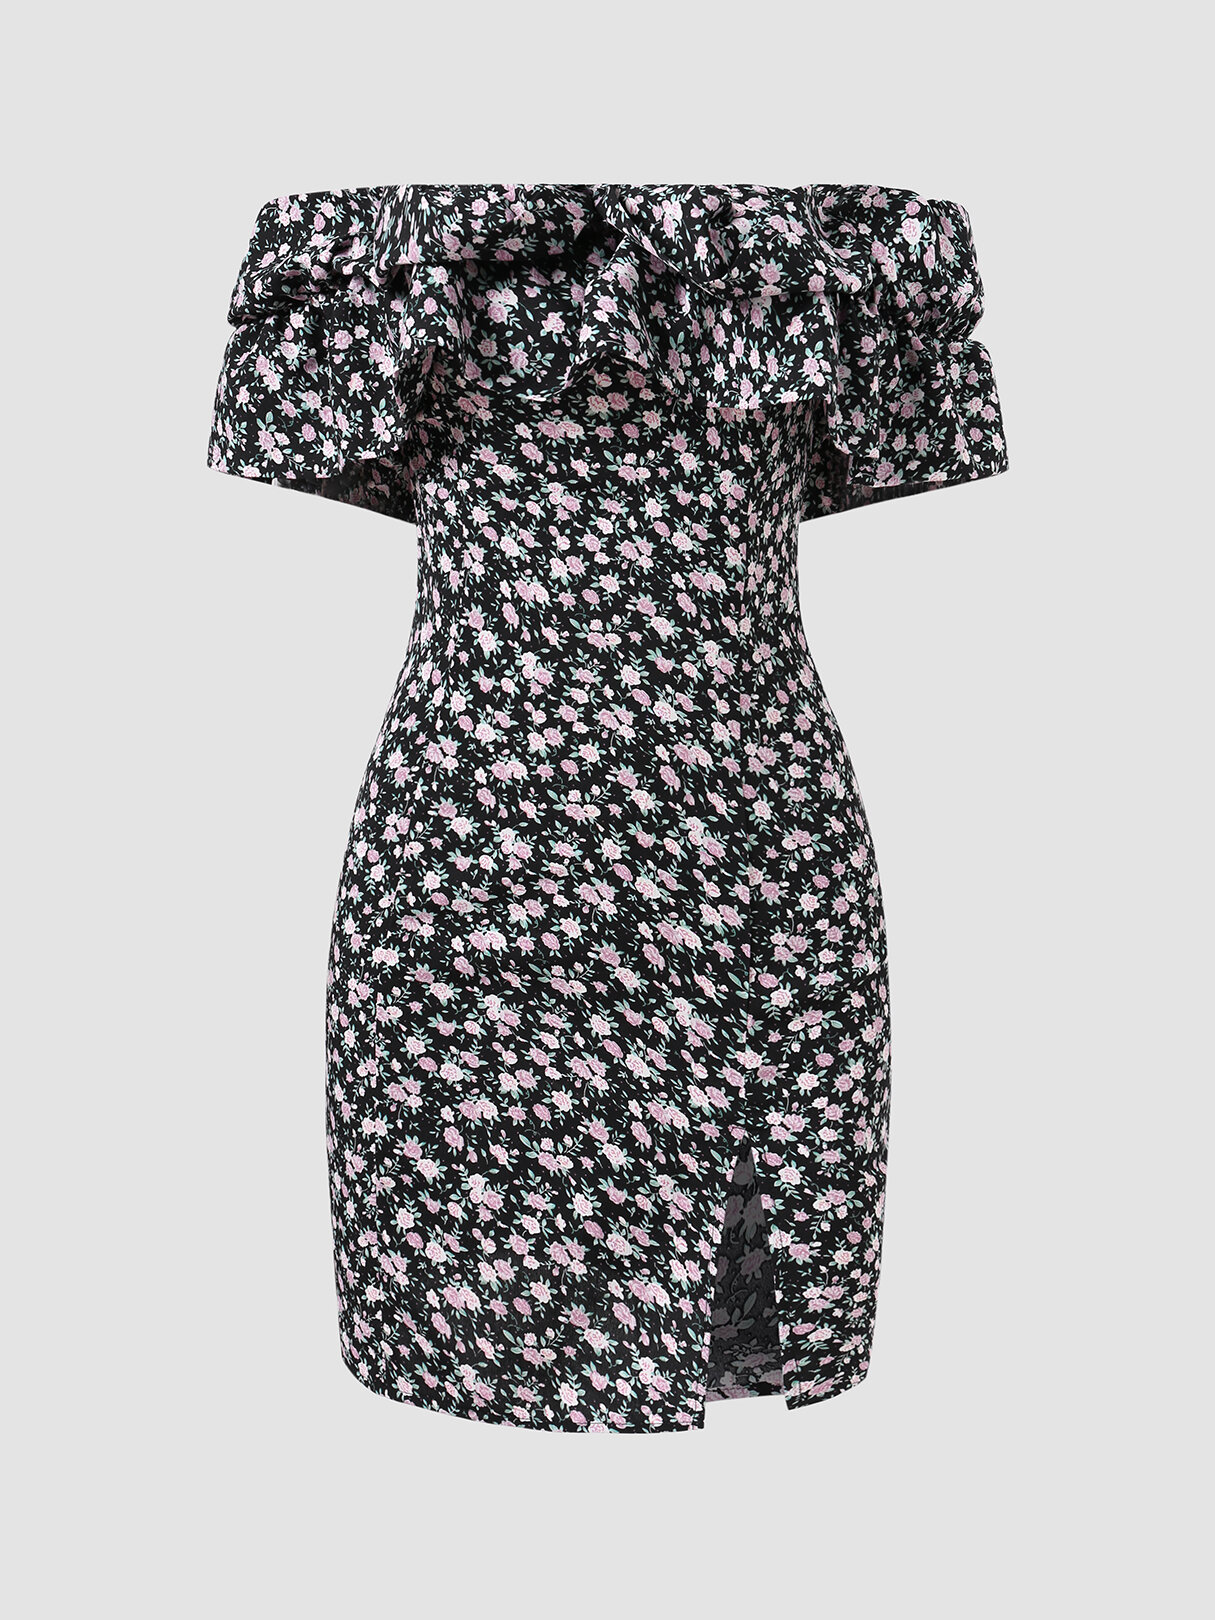 Ruffled Splited Floral Print Off-shoulder Short Sleeve Dresses